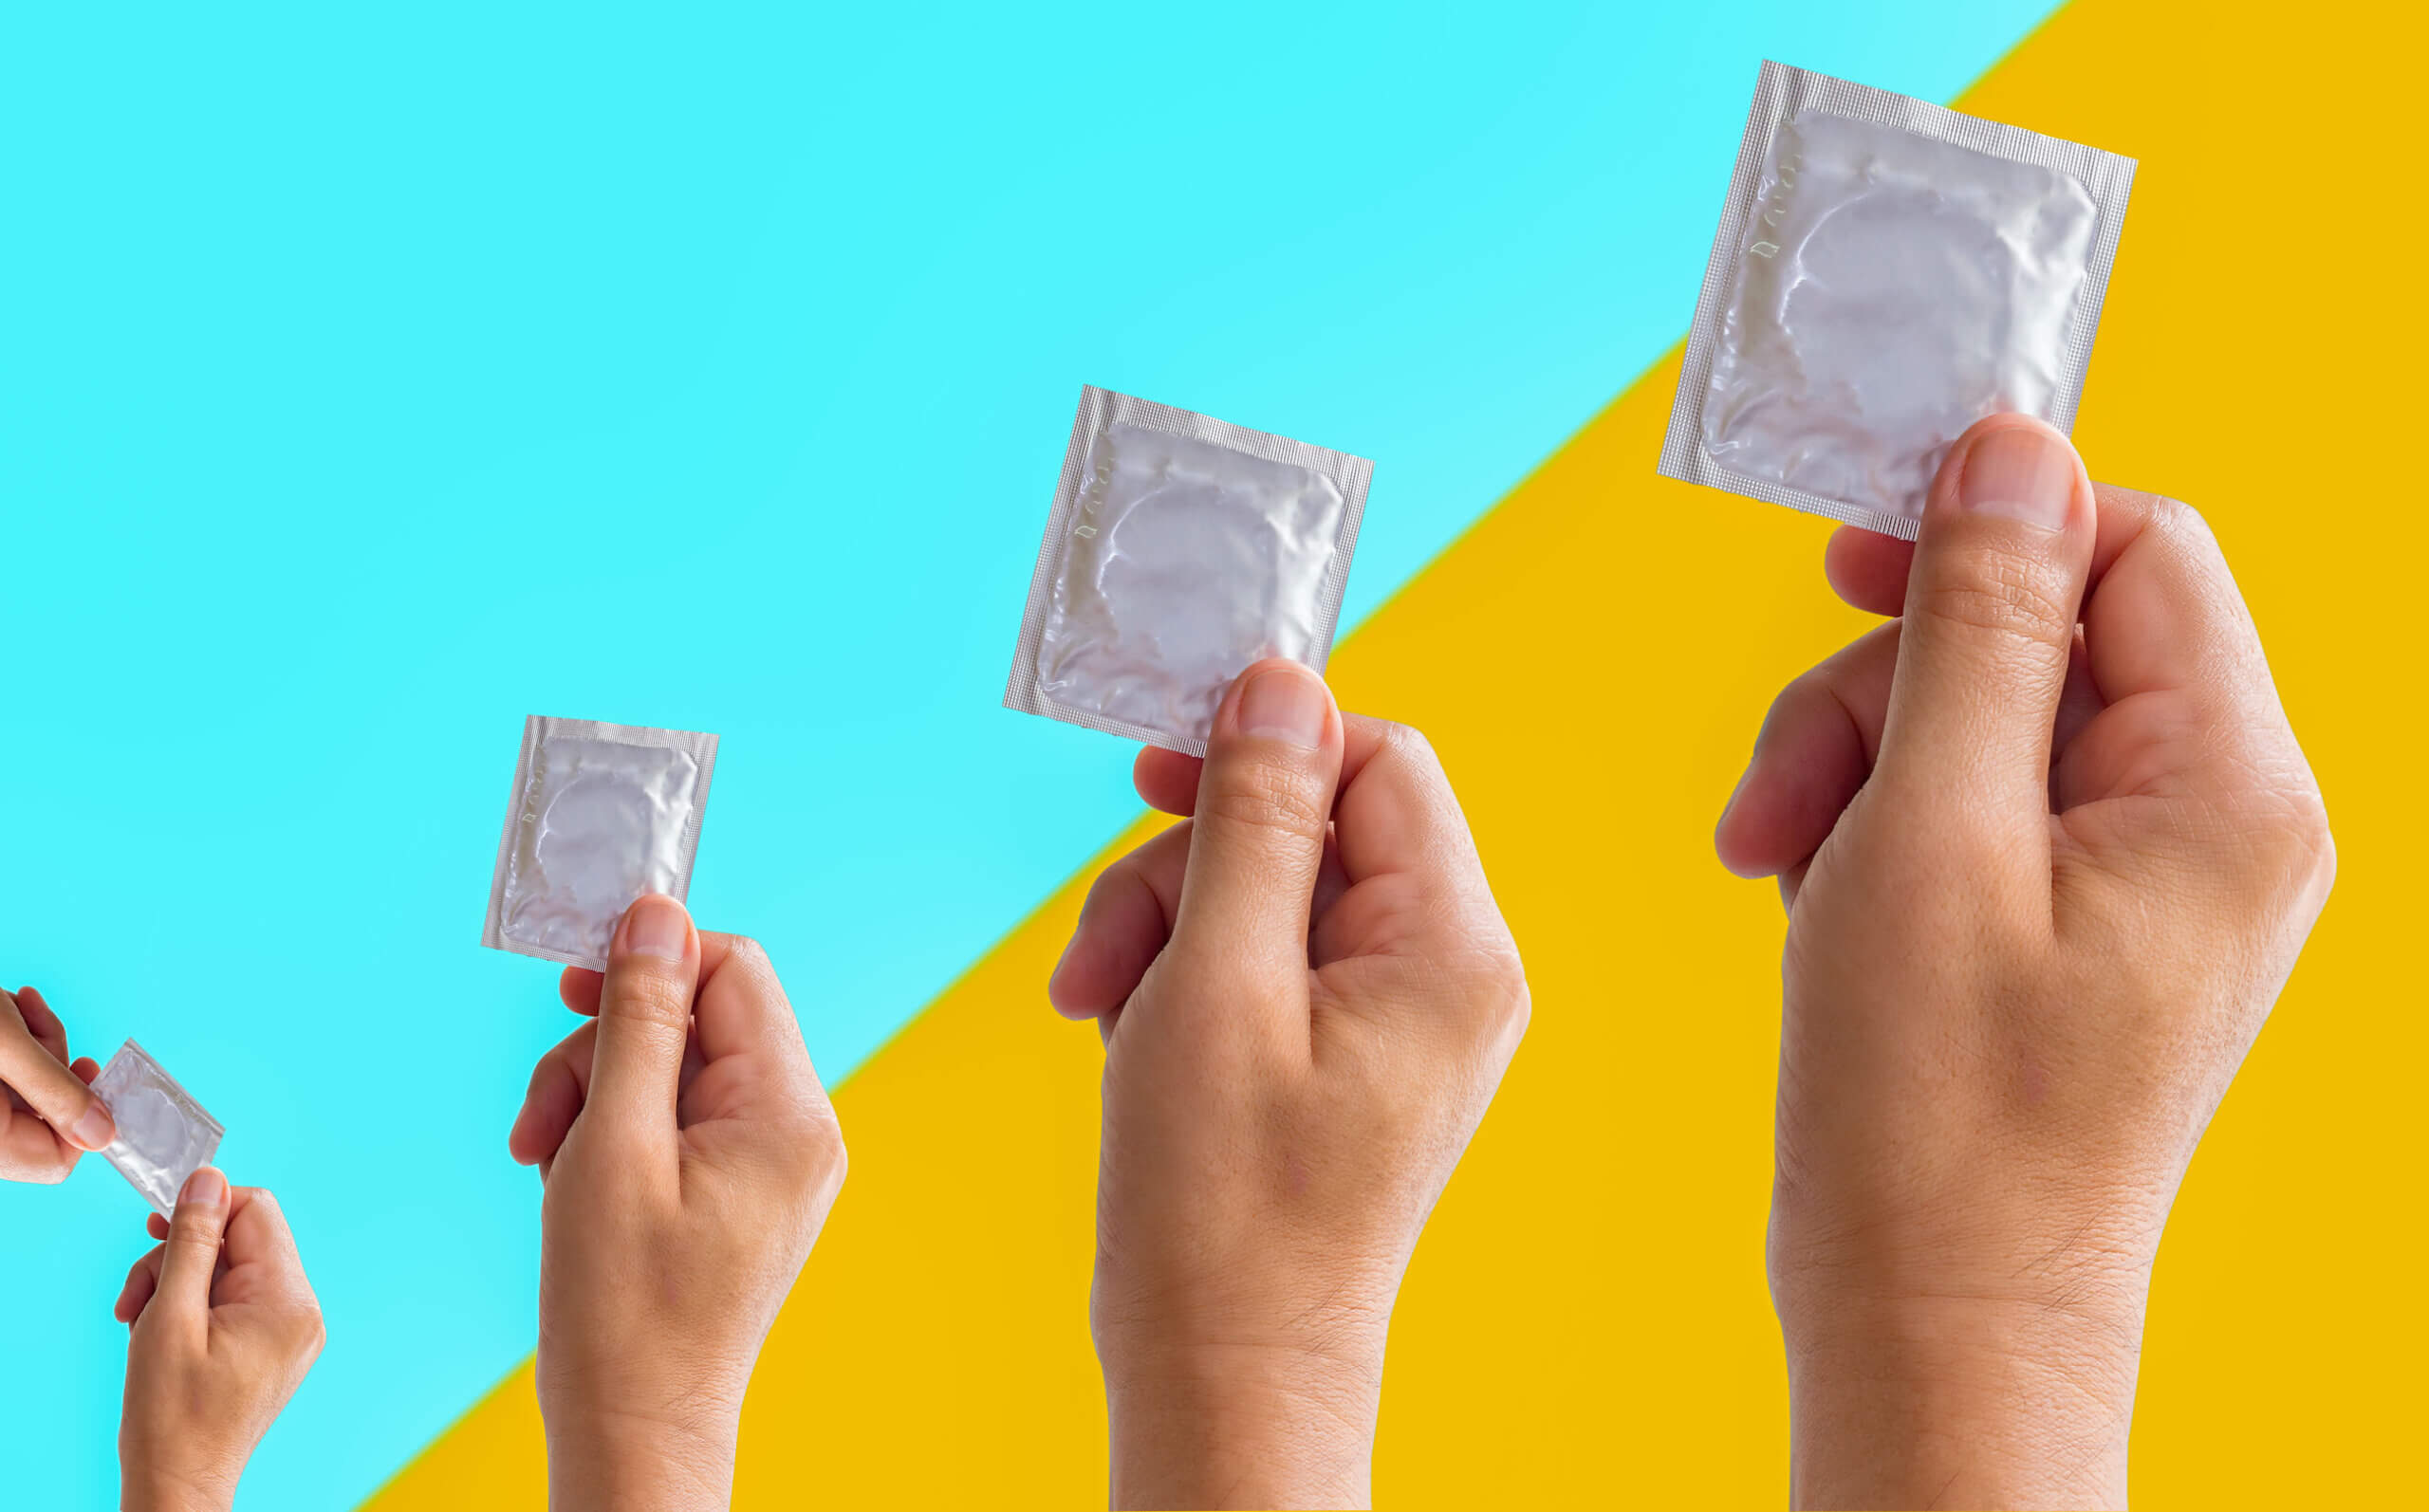 Preservativos y condones en las manos.